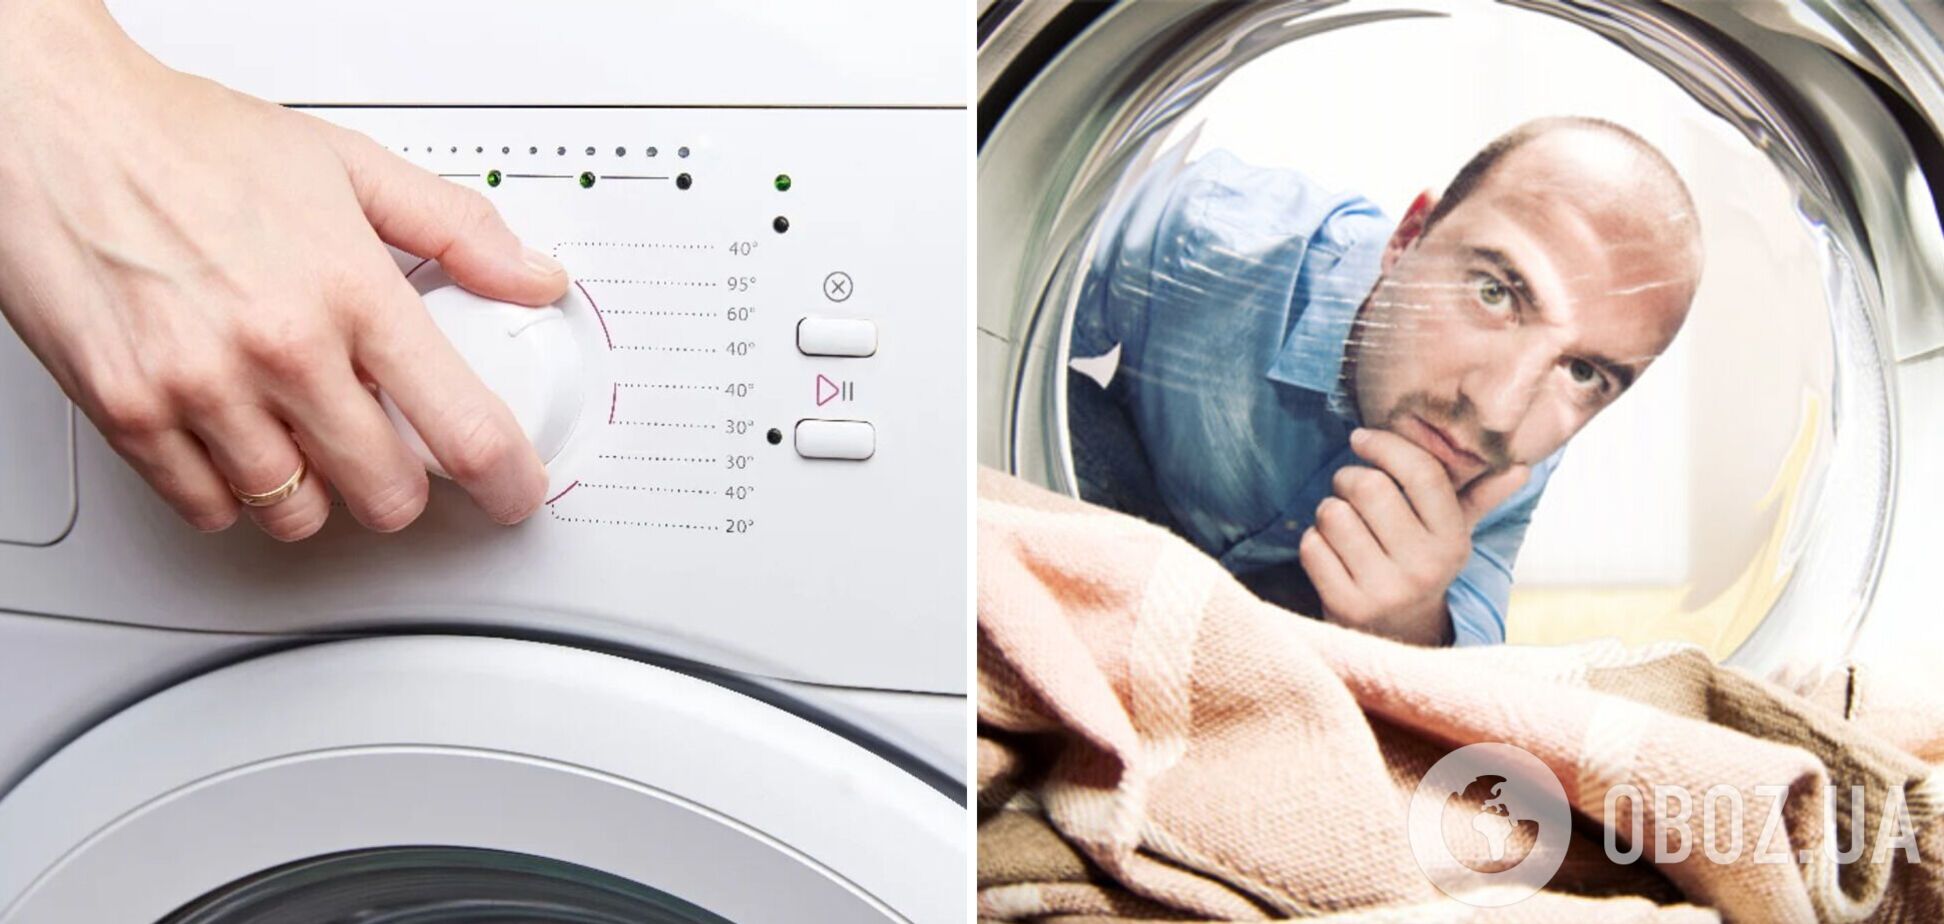 Якщо зникло світло під час прання: чи треба вимикати пралку з розетки та перезапускати